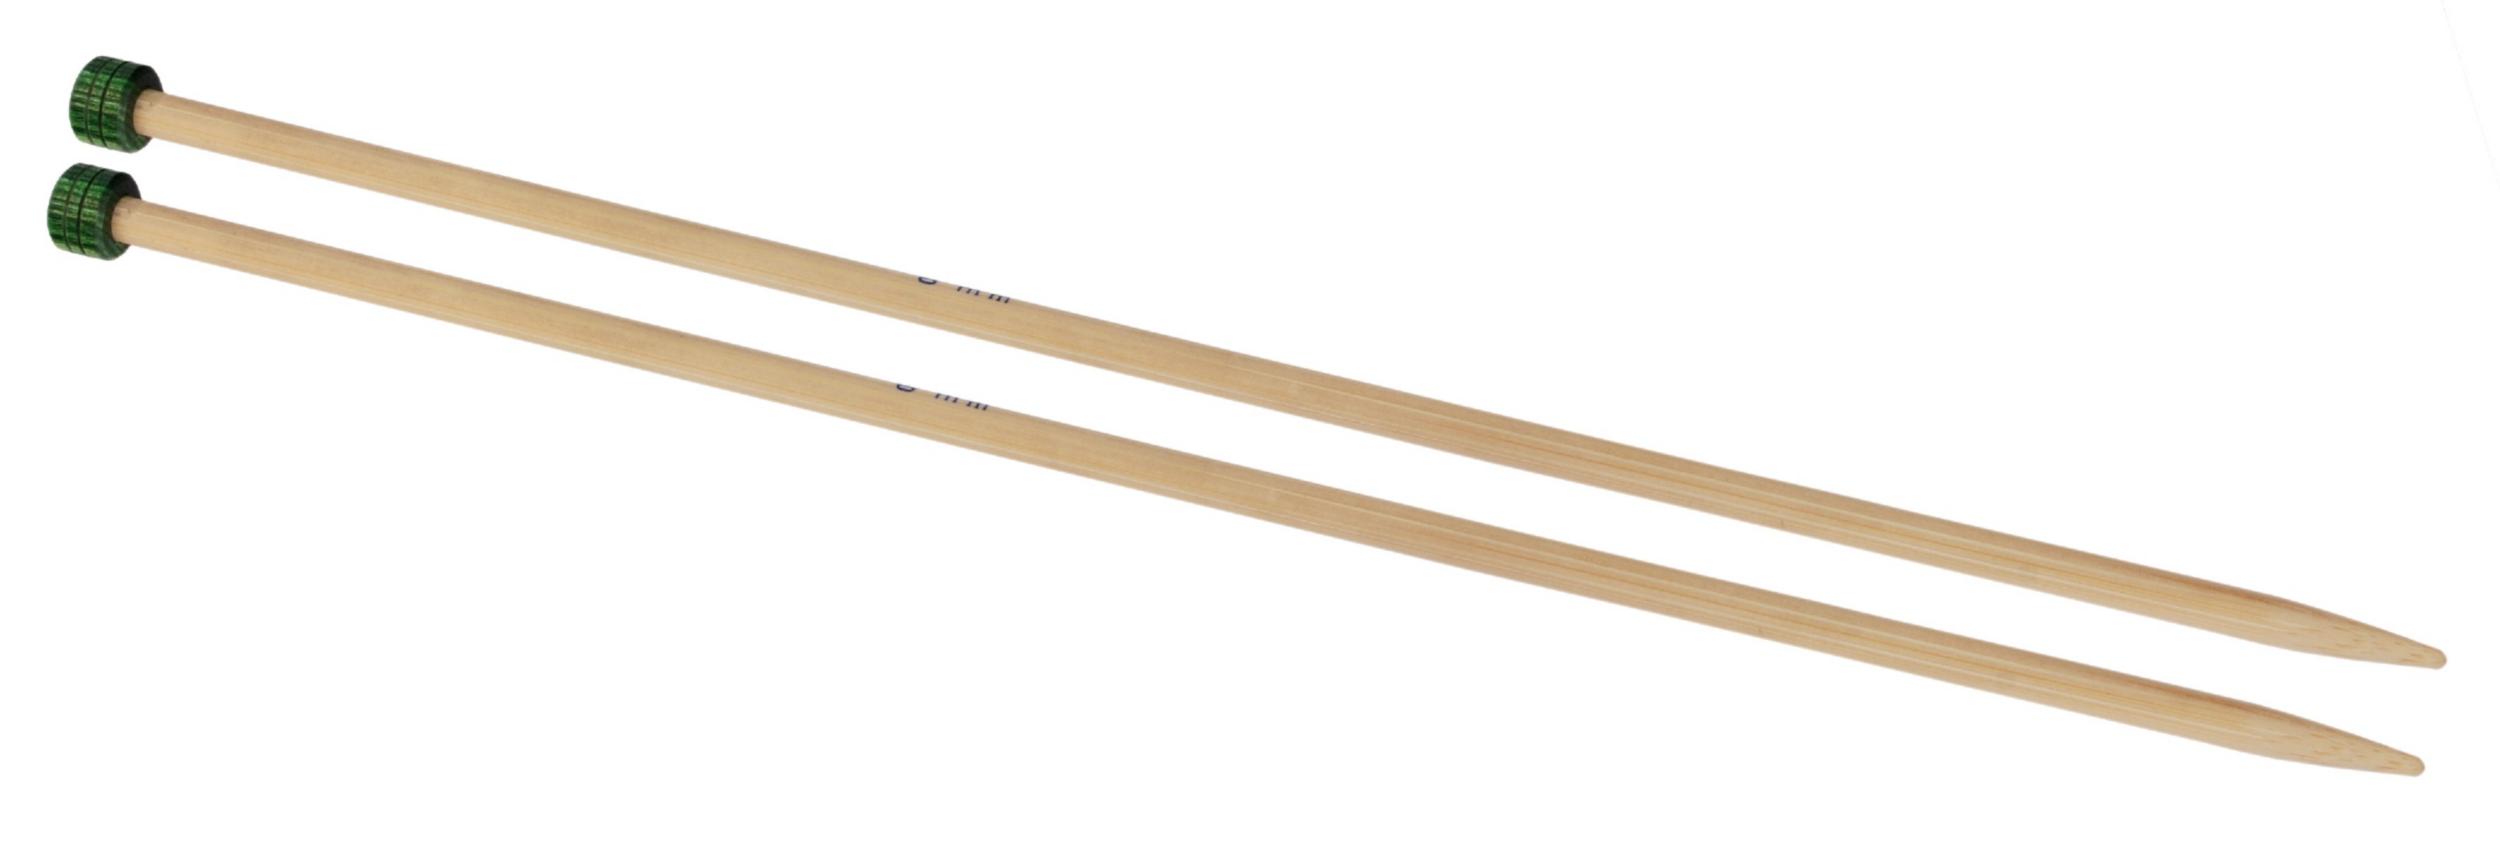 22317 Спиці прямі Bamboo KnitPro, 25 см, 3.25 мм